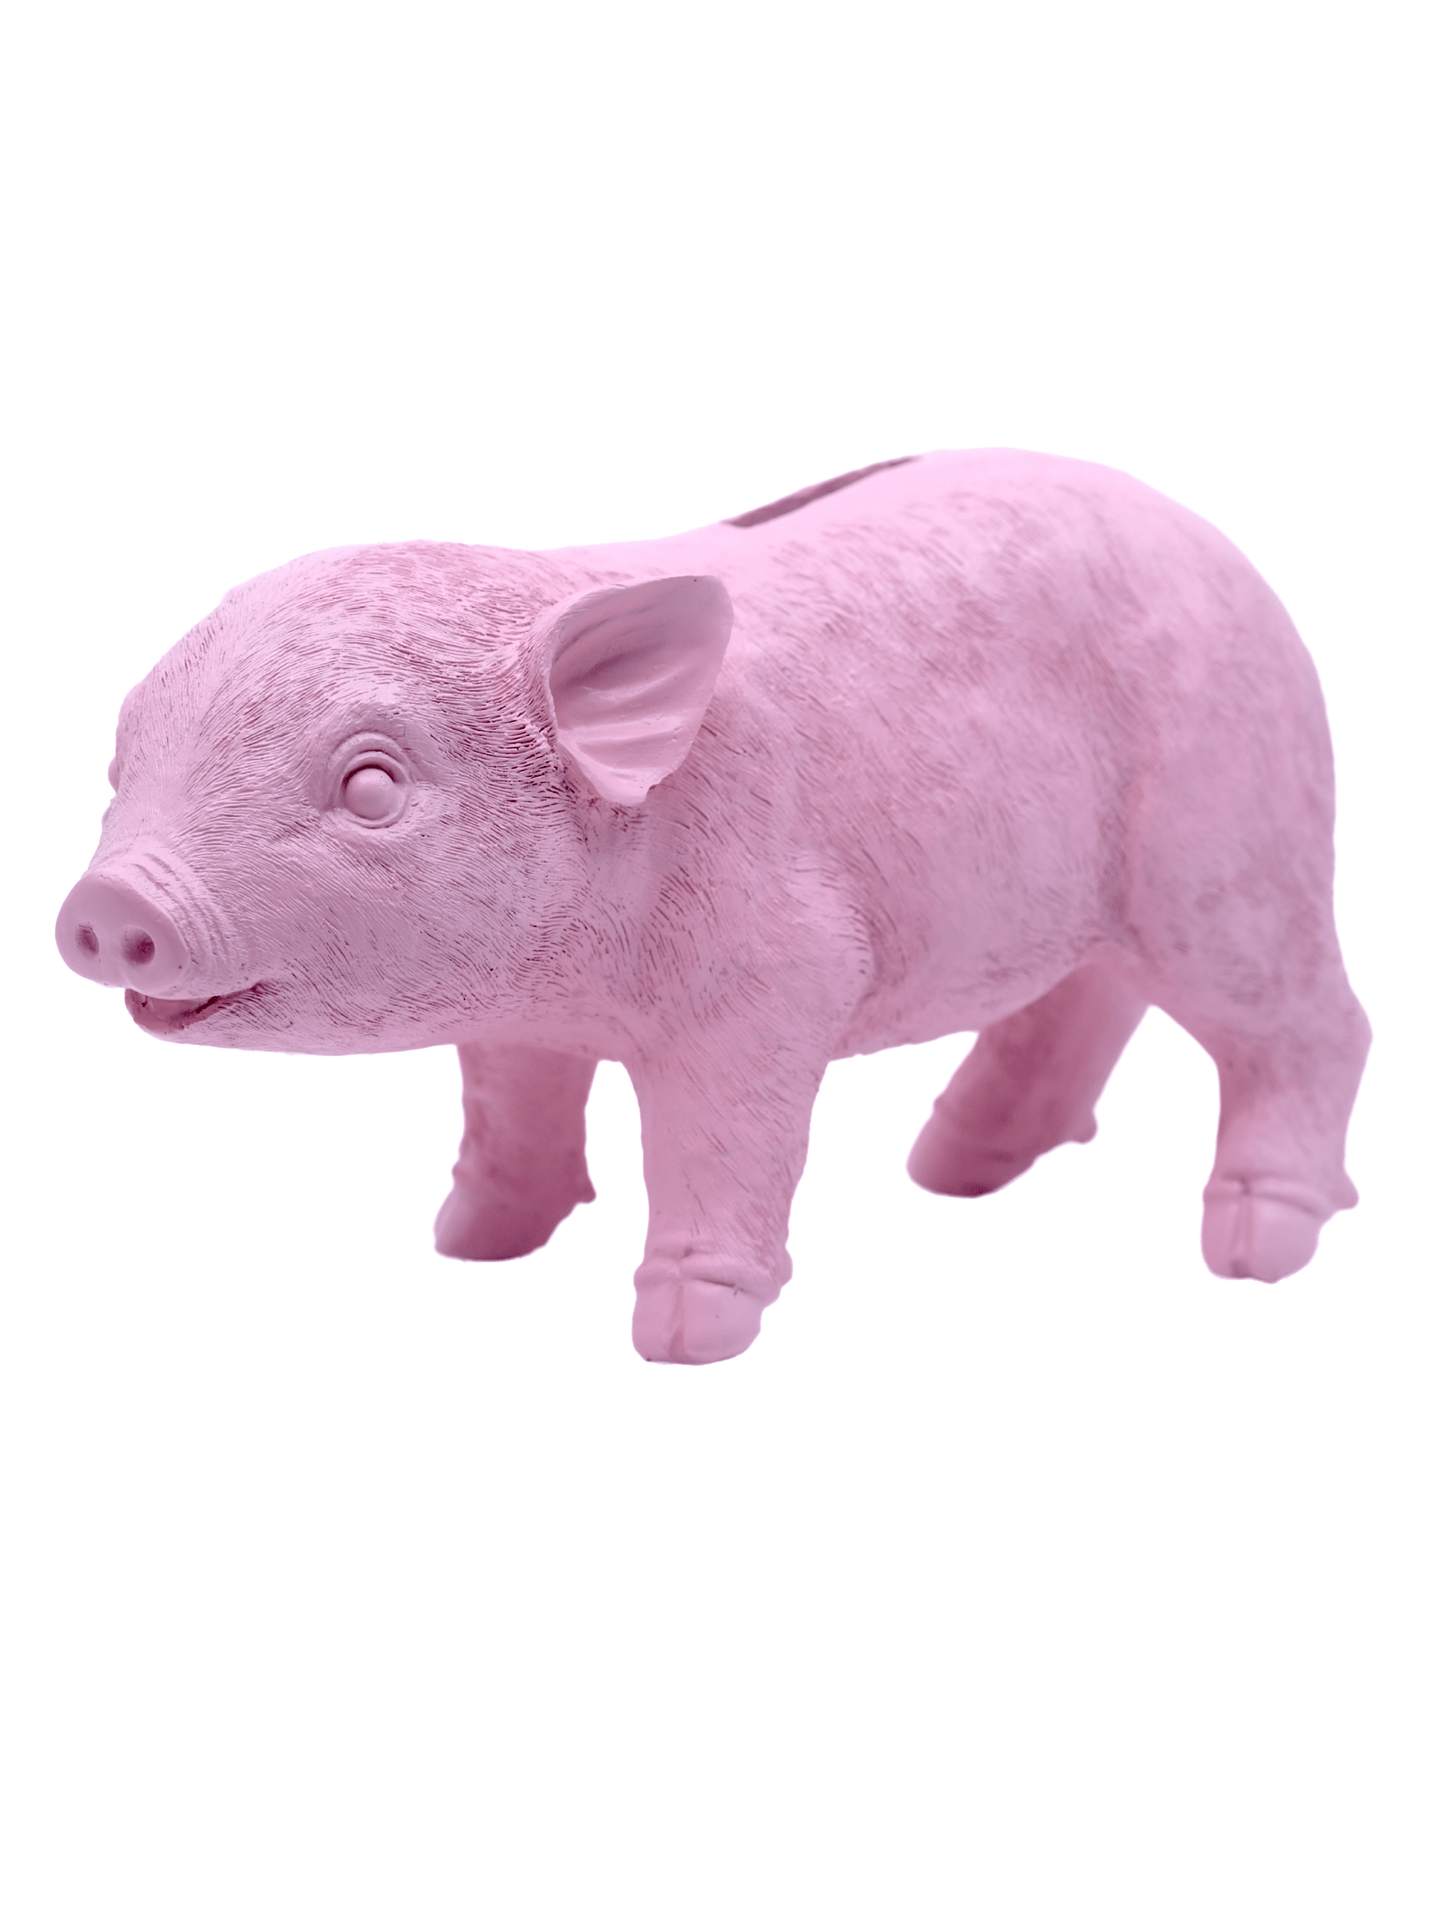 Pink Piggy Money Bank Resin